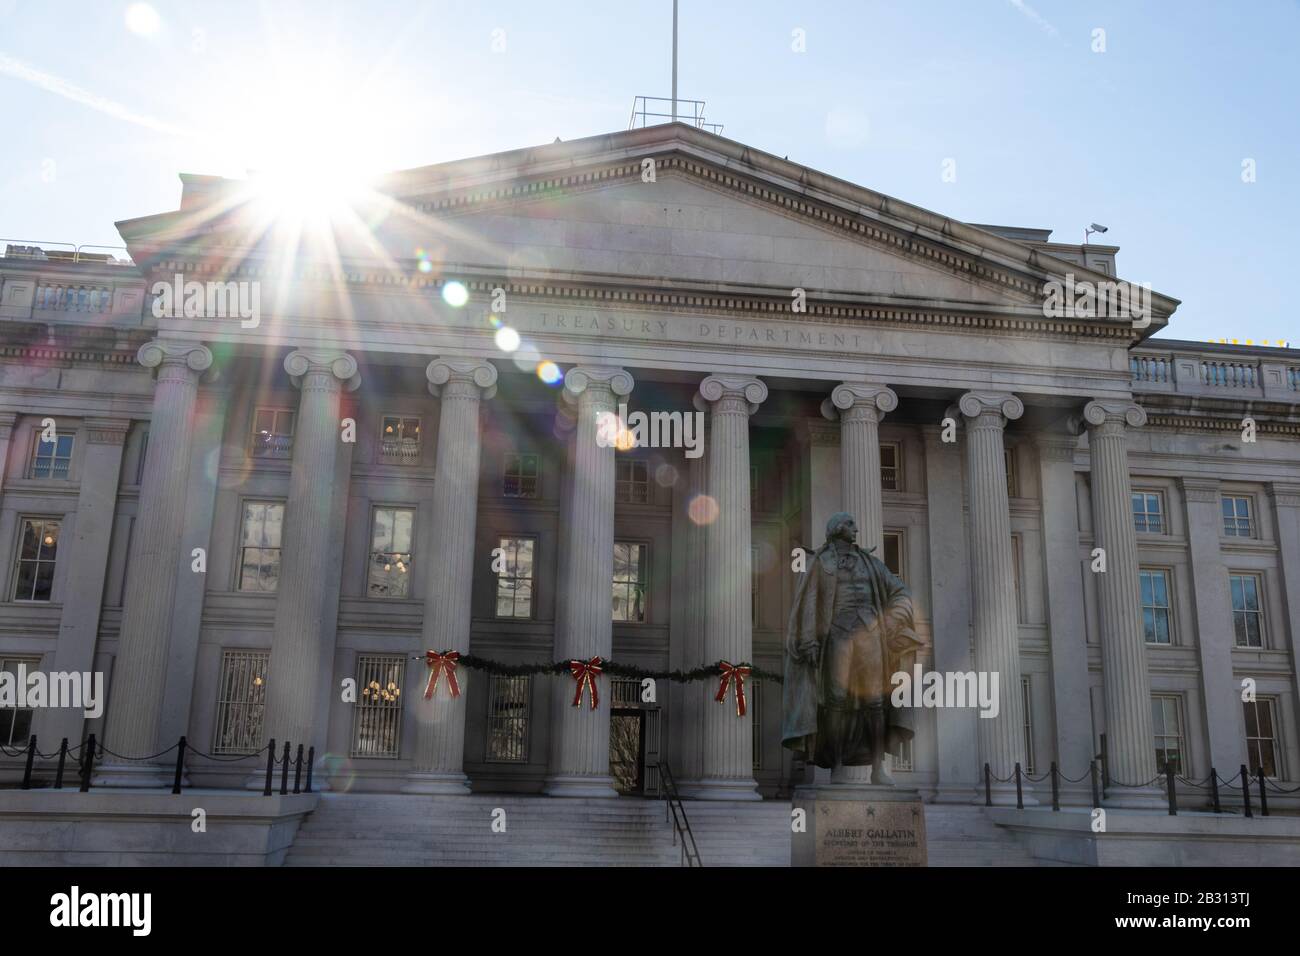 Die Sonne krampft auf das Treasury Building, in dem das US-Finanzministerium ansässig ist. Bronzestatue an Albert Gallatin im Vorderteil. Stockfoto